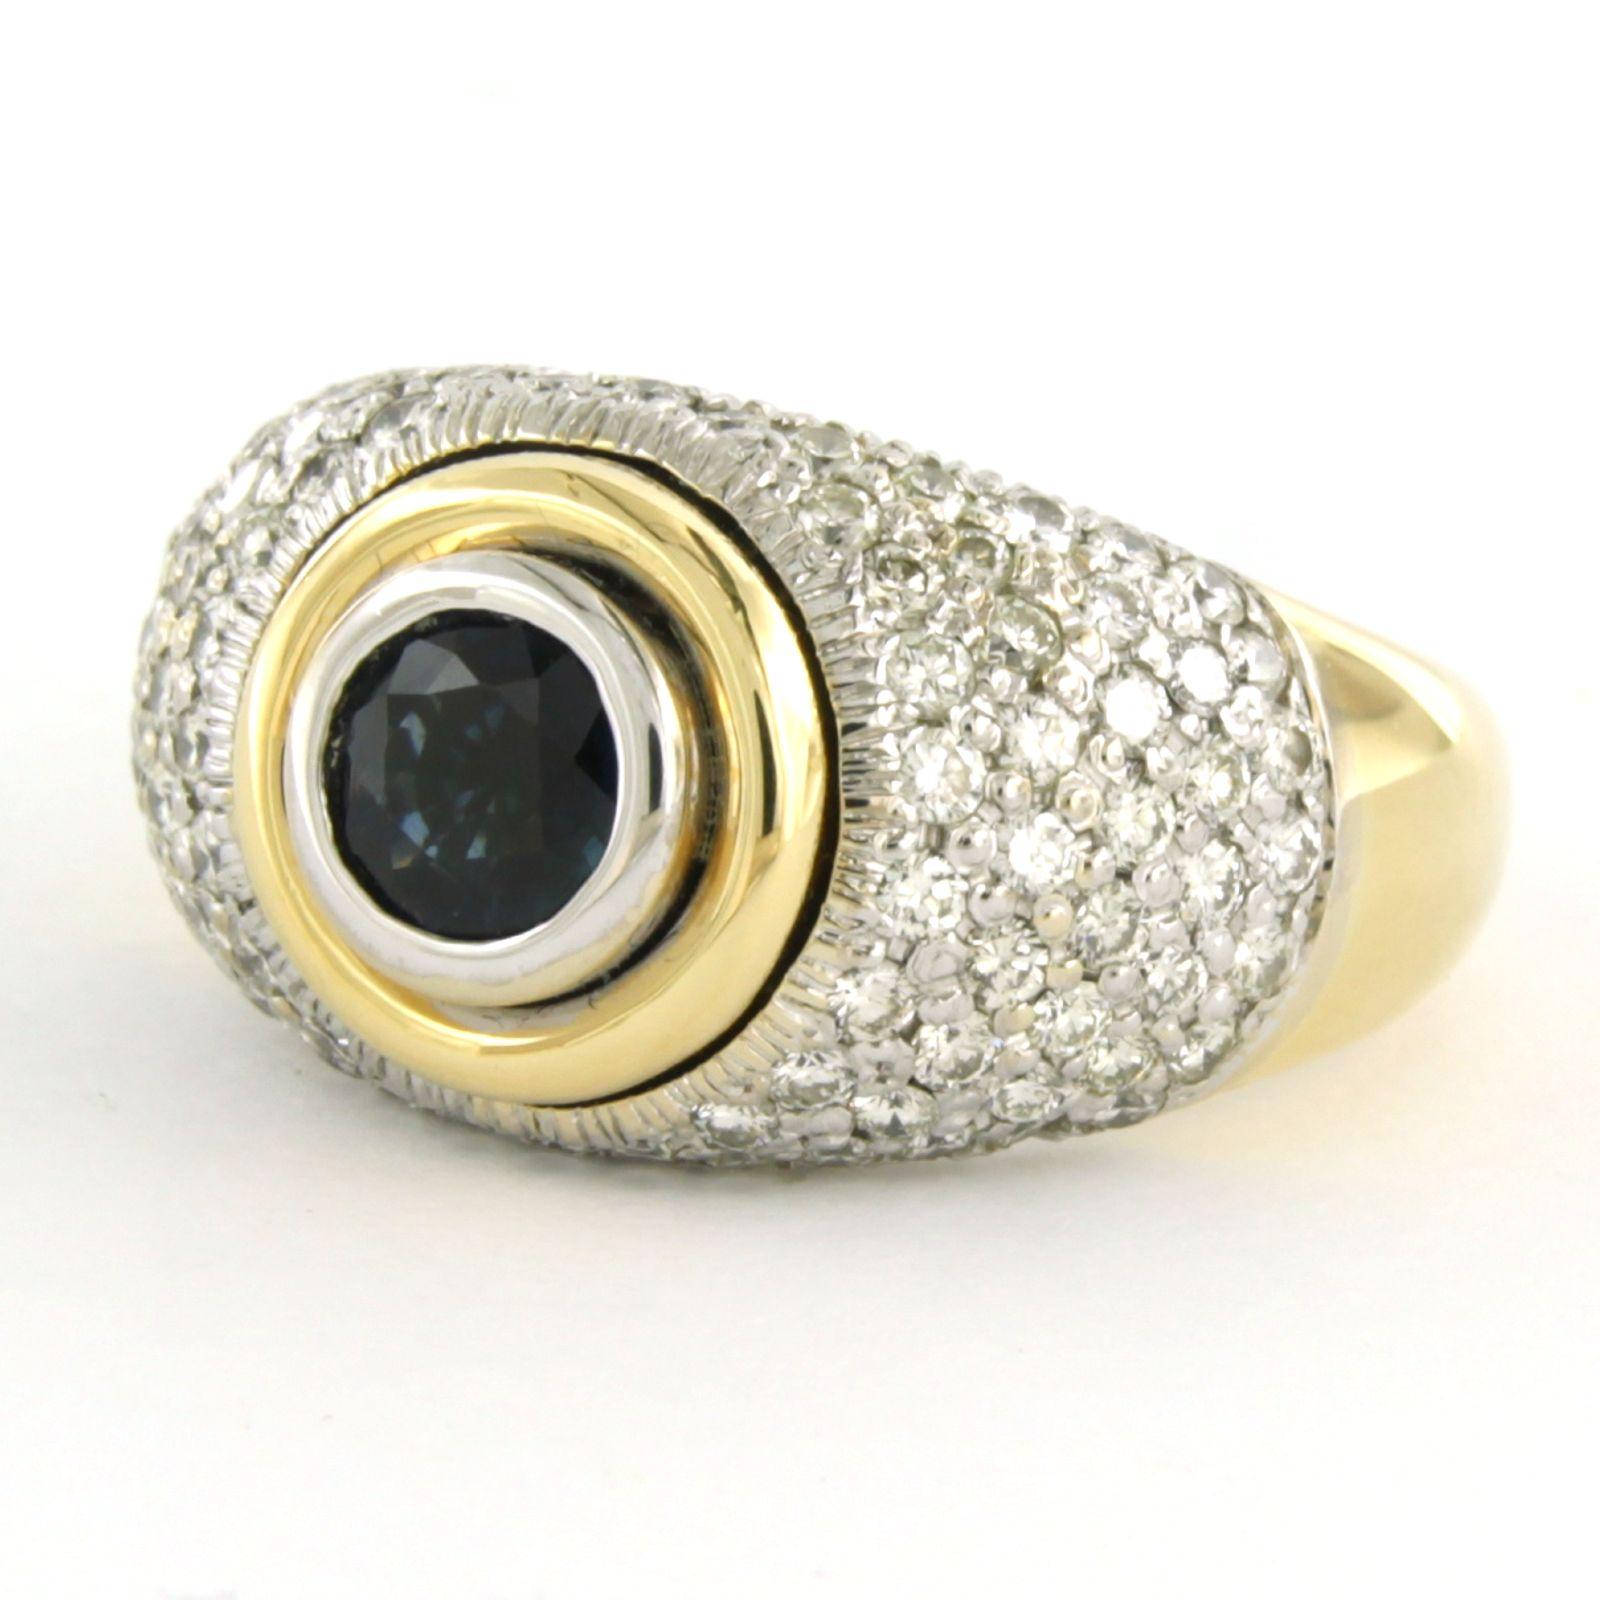 Ring aus 18 Karat Bicolor-Gold, besetzt mit einem zentralen Saphir und einem Diamanten im Brillantschliff. 1.00ct - G/H - VS/SI - Ringgröße U.S. 7 - EU. 17.25(54)

detaillierte Beschreibung:

Die Oberseite des Rings ist 1,3 cm breit und 7,6 mm